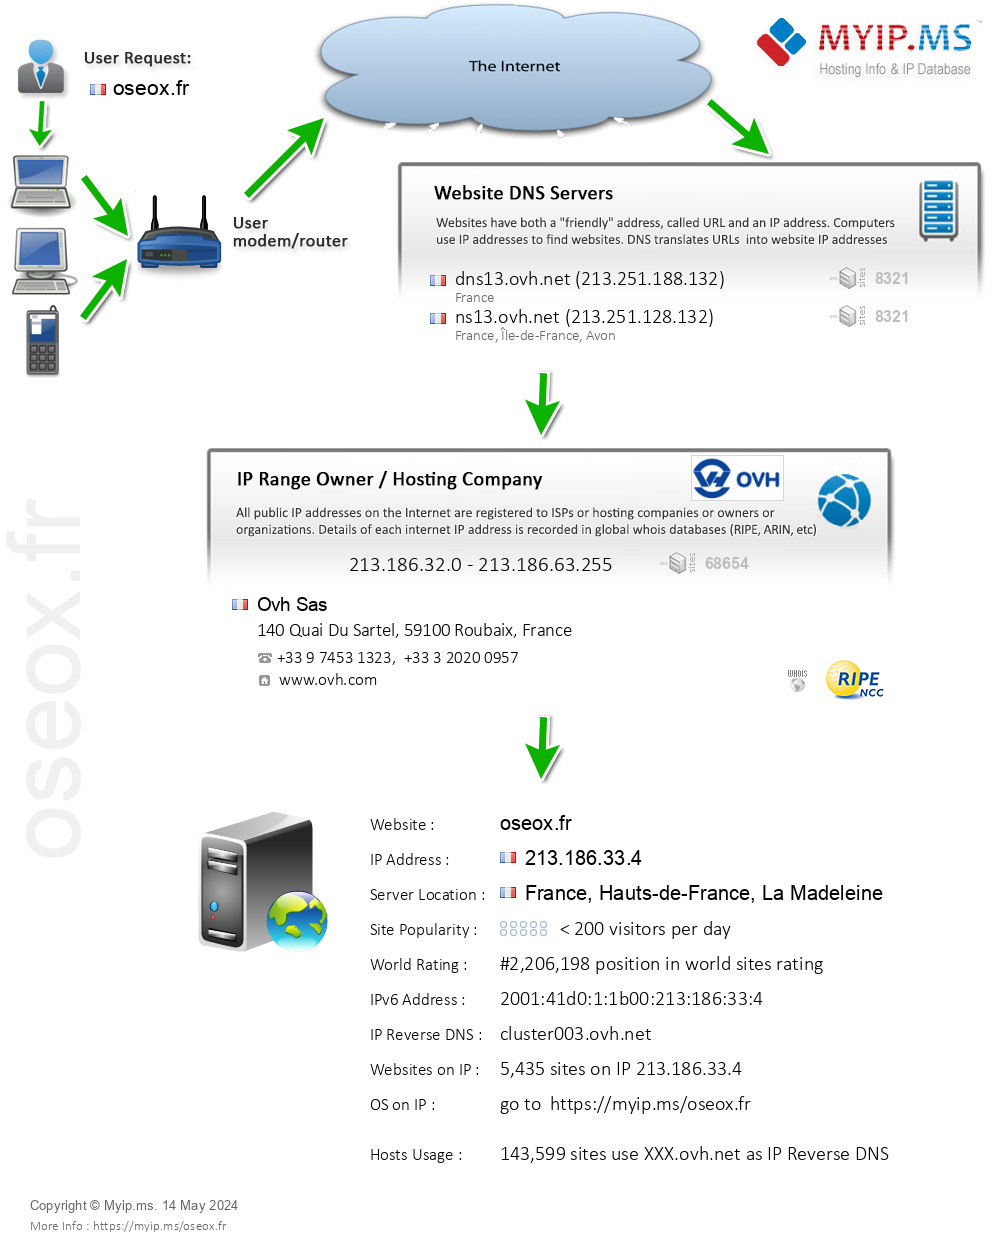 Oseox.fr - Website Hosting Visual IP Diagram